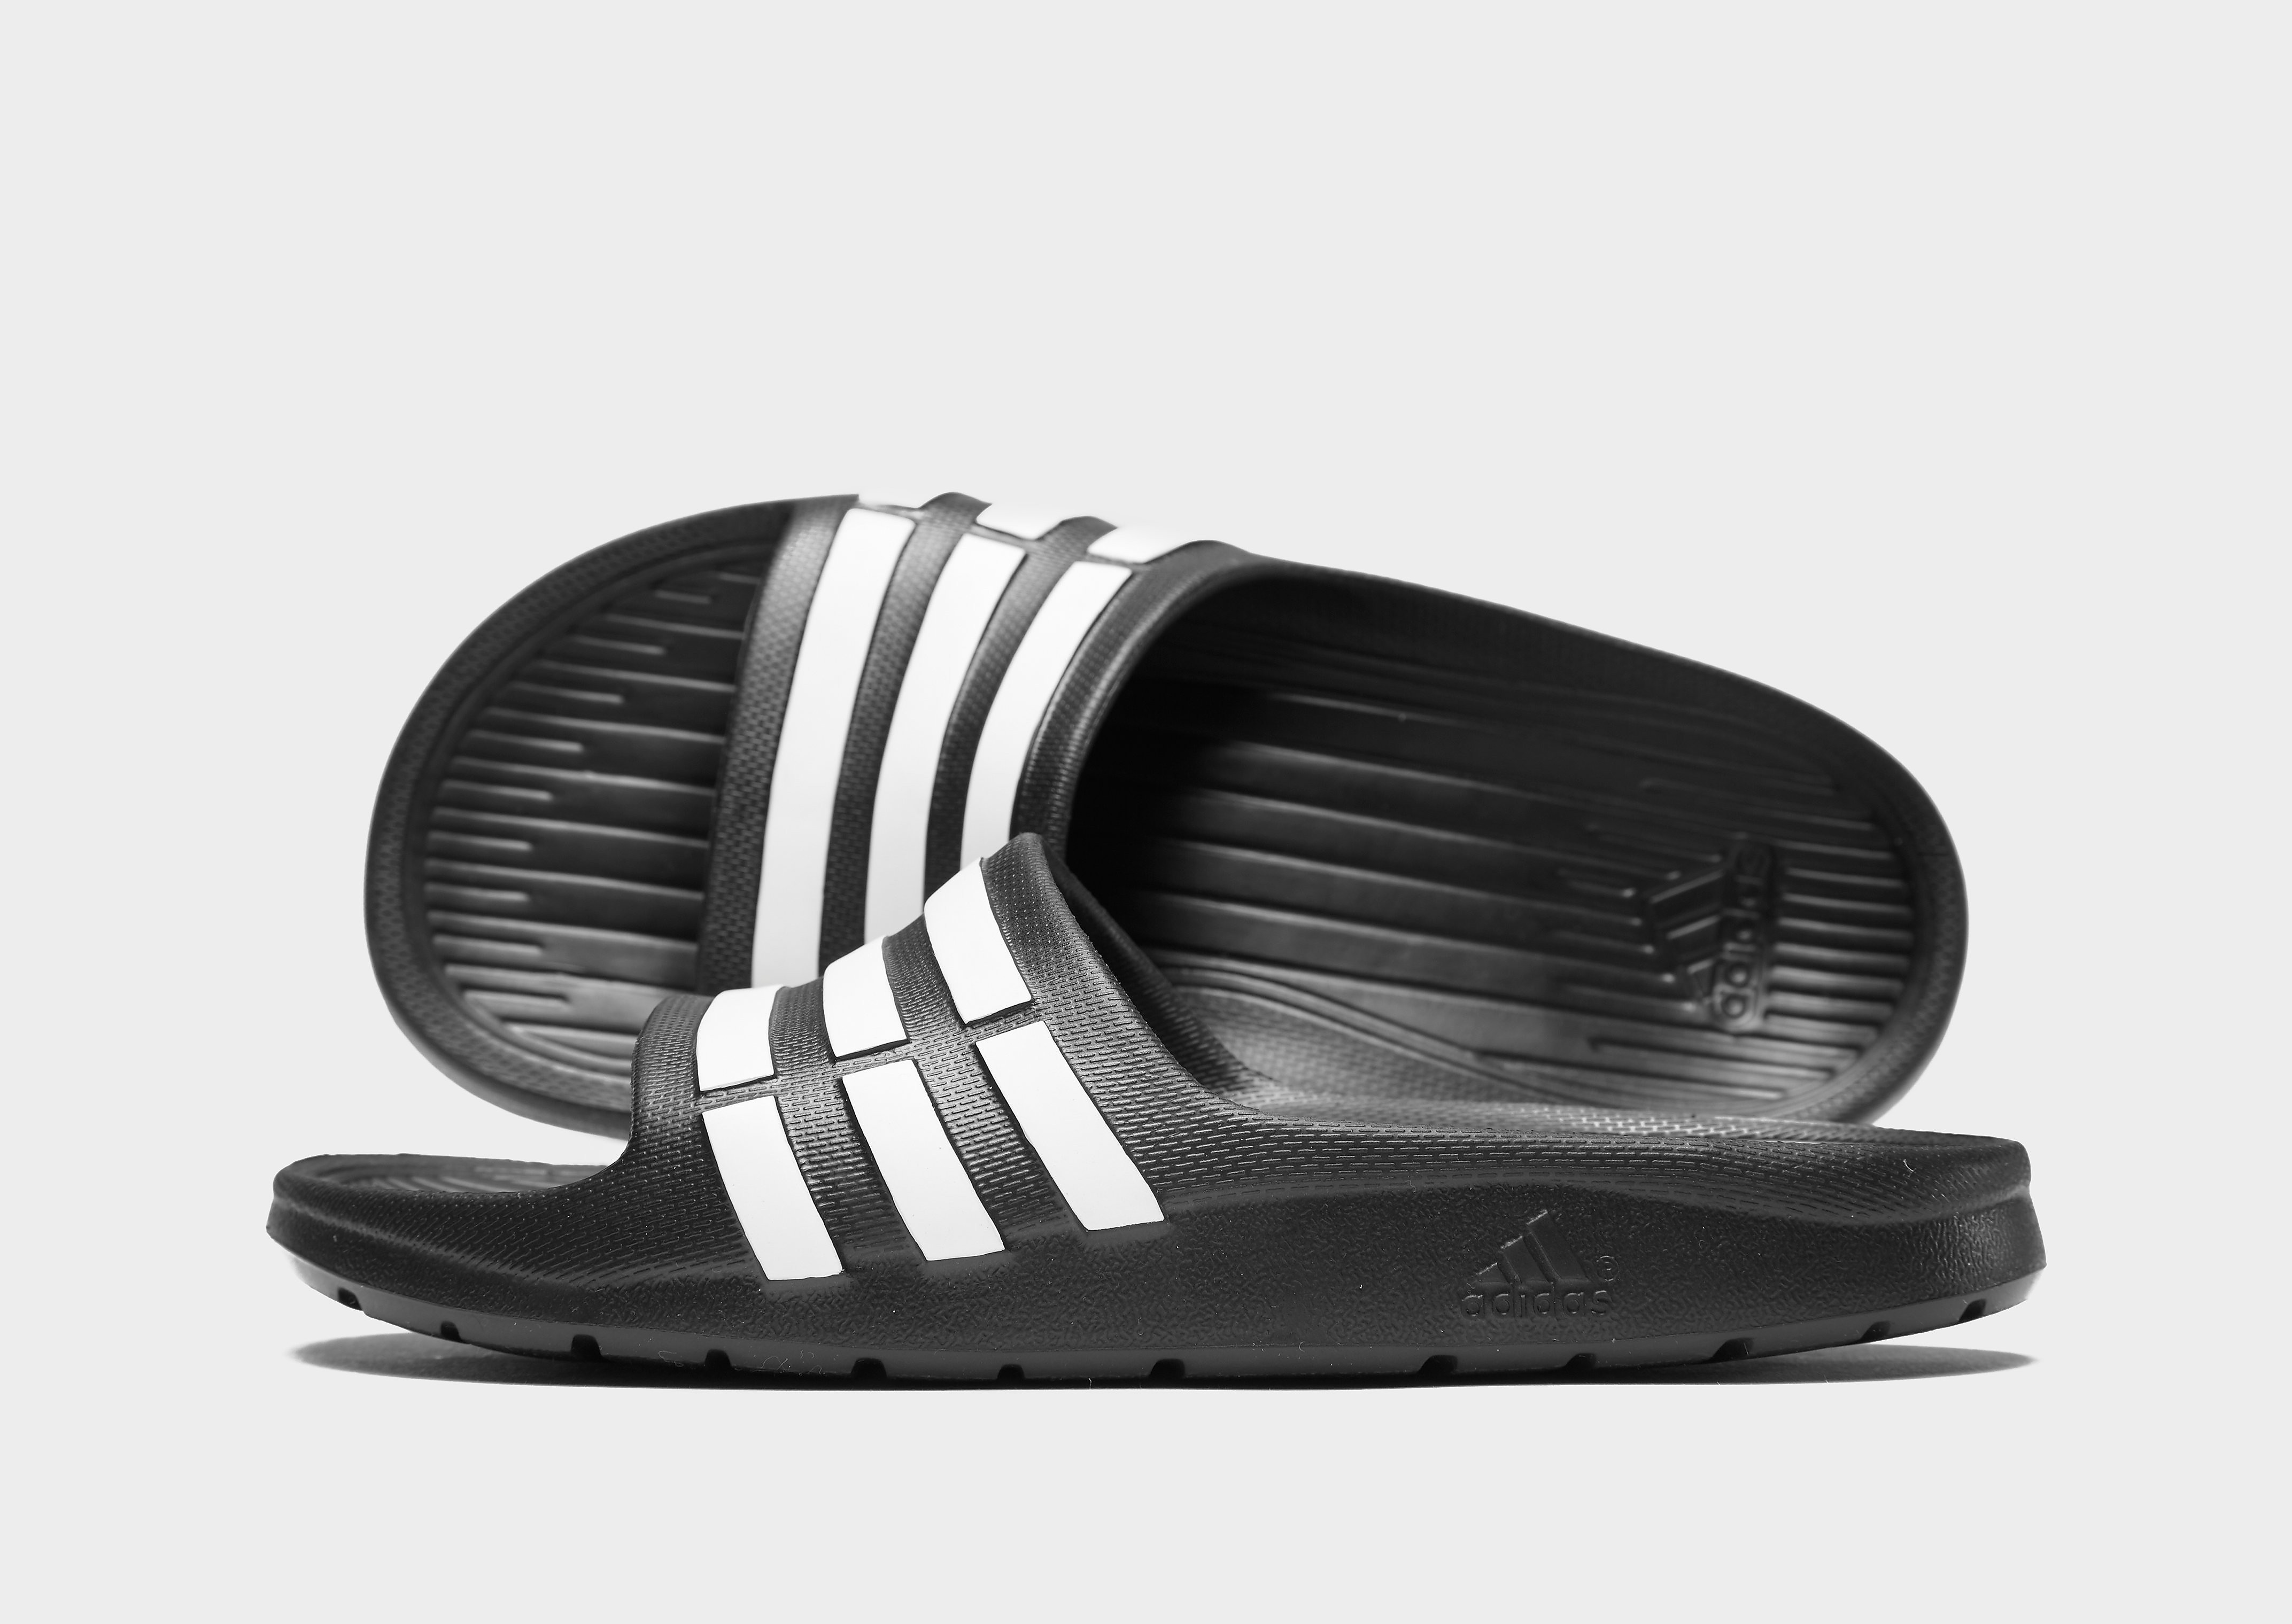 Adidas Adilette Slide. Adidas Sliders. Adidas Slide. A New Version of the adidas Adilette Slide is reportedly releasing soon. Адидас slide